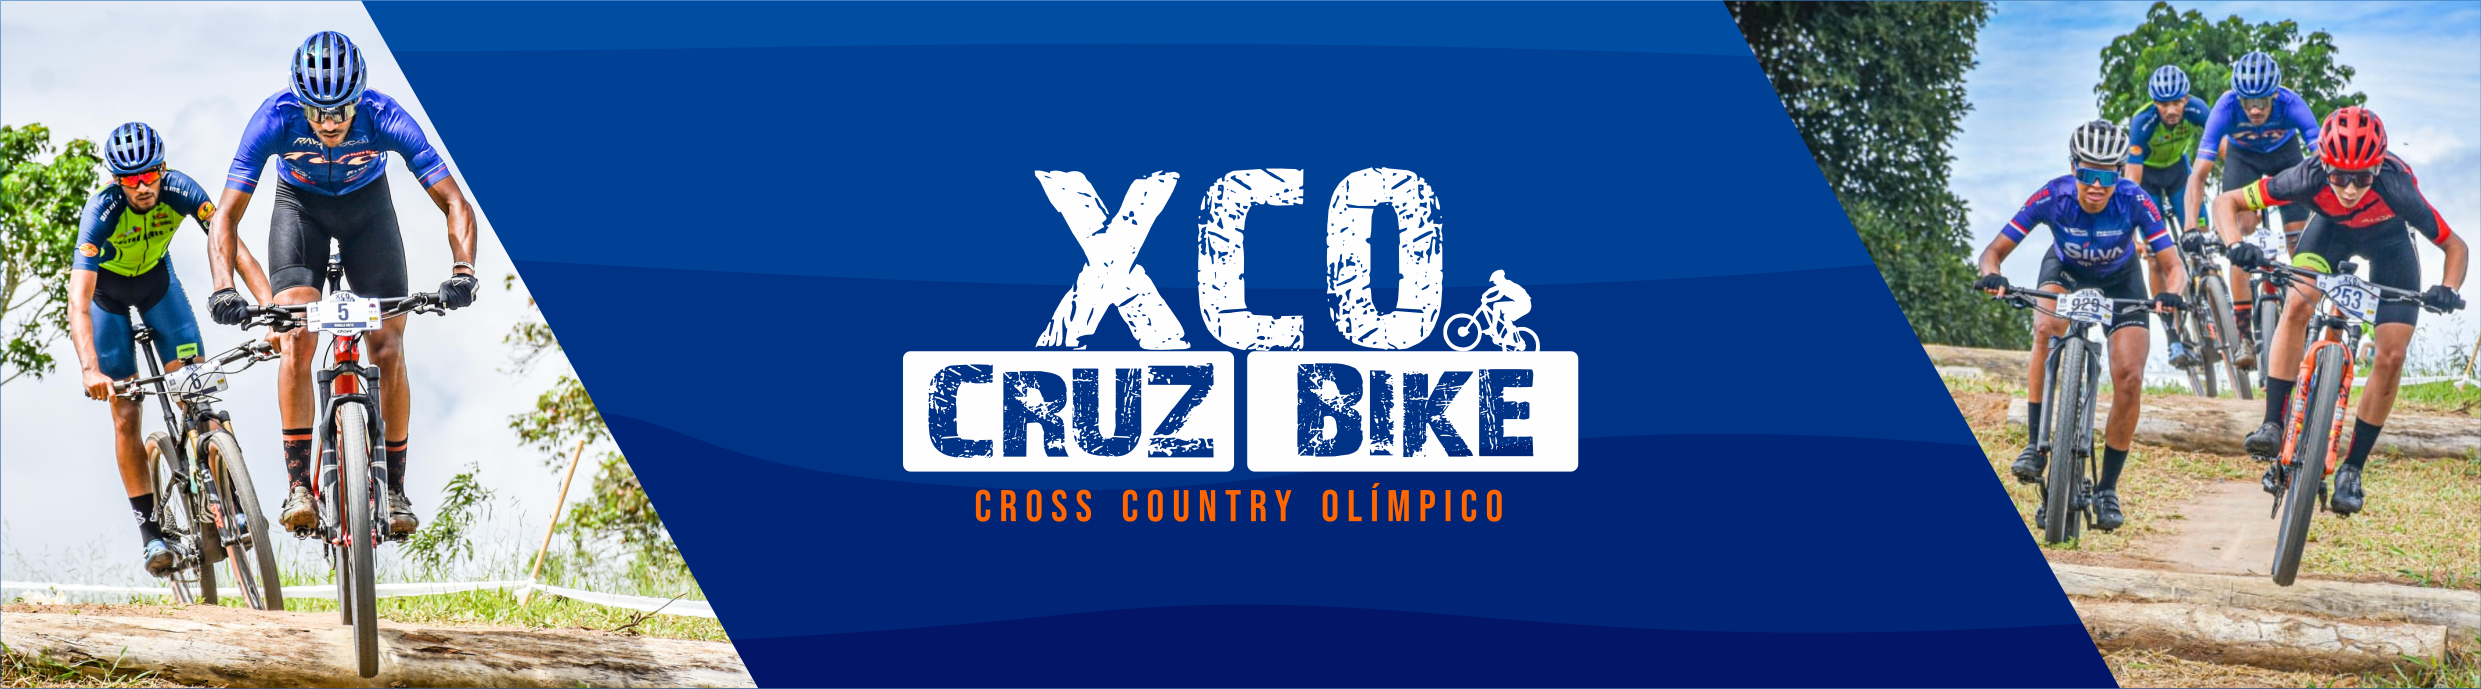 XCO Cruz Bike